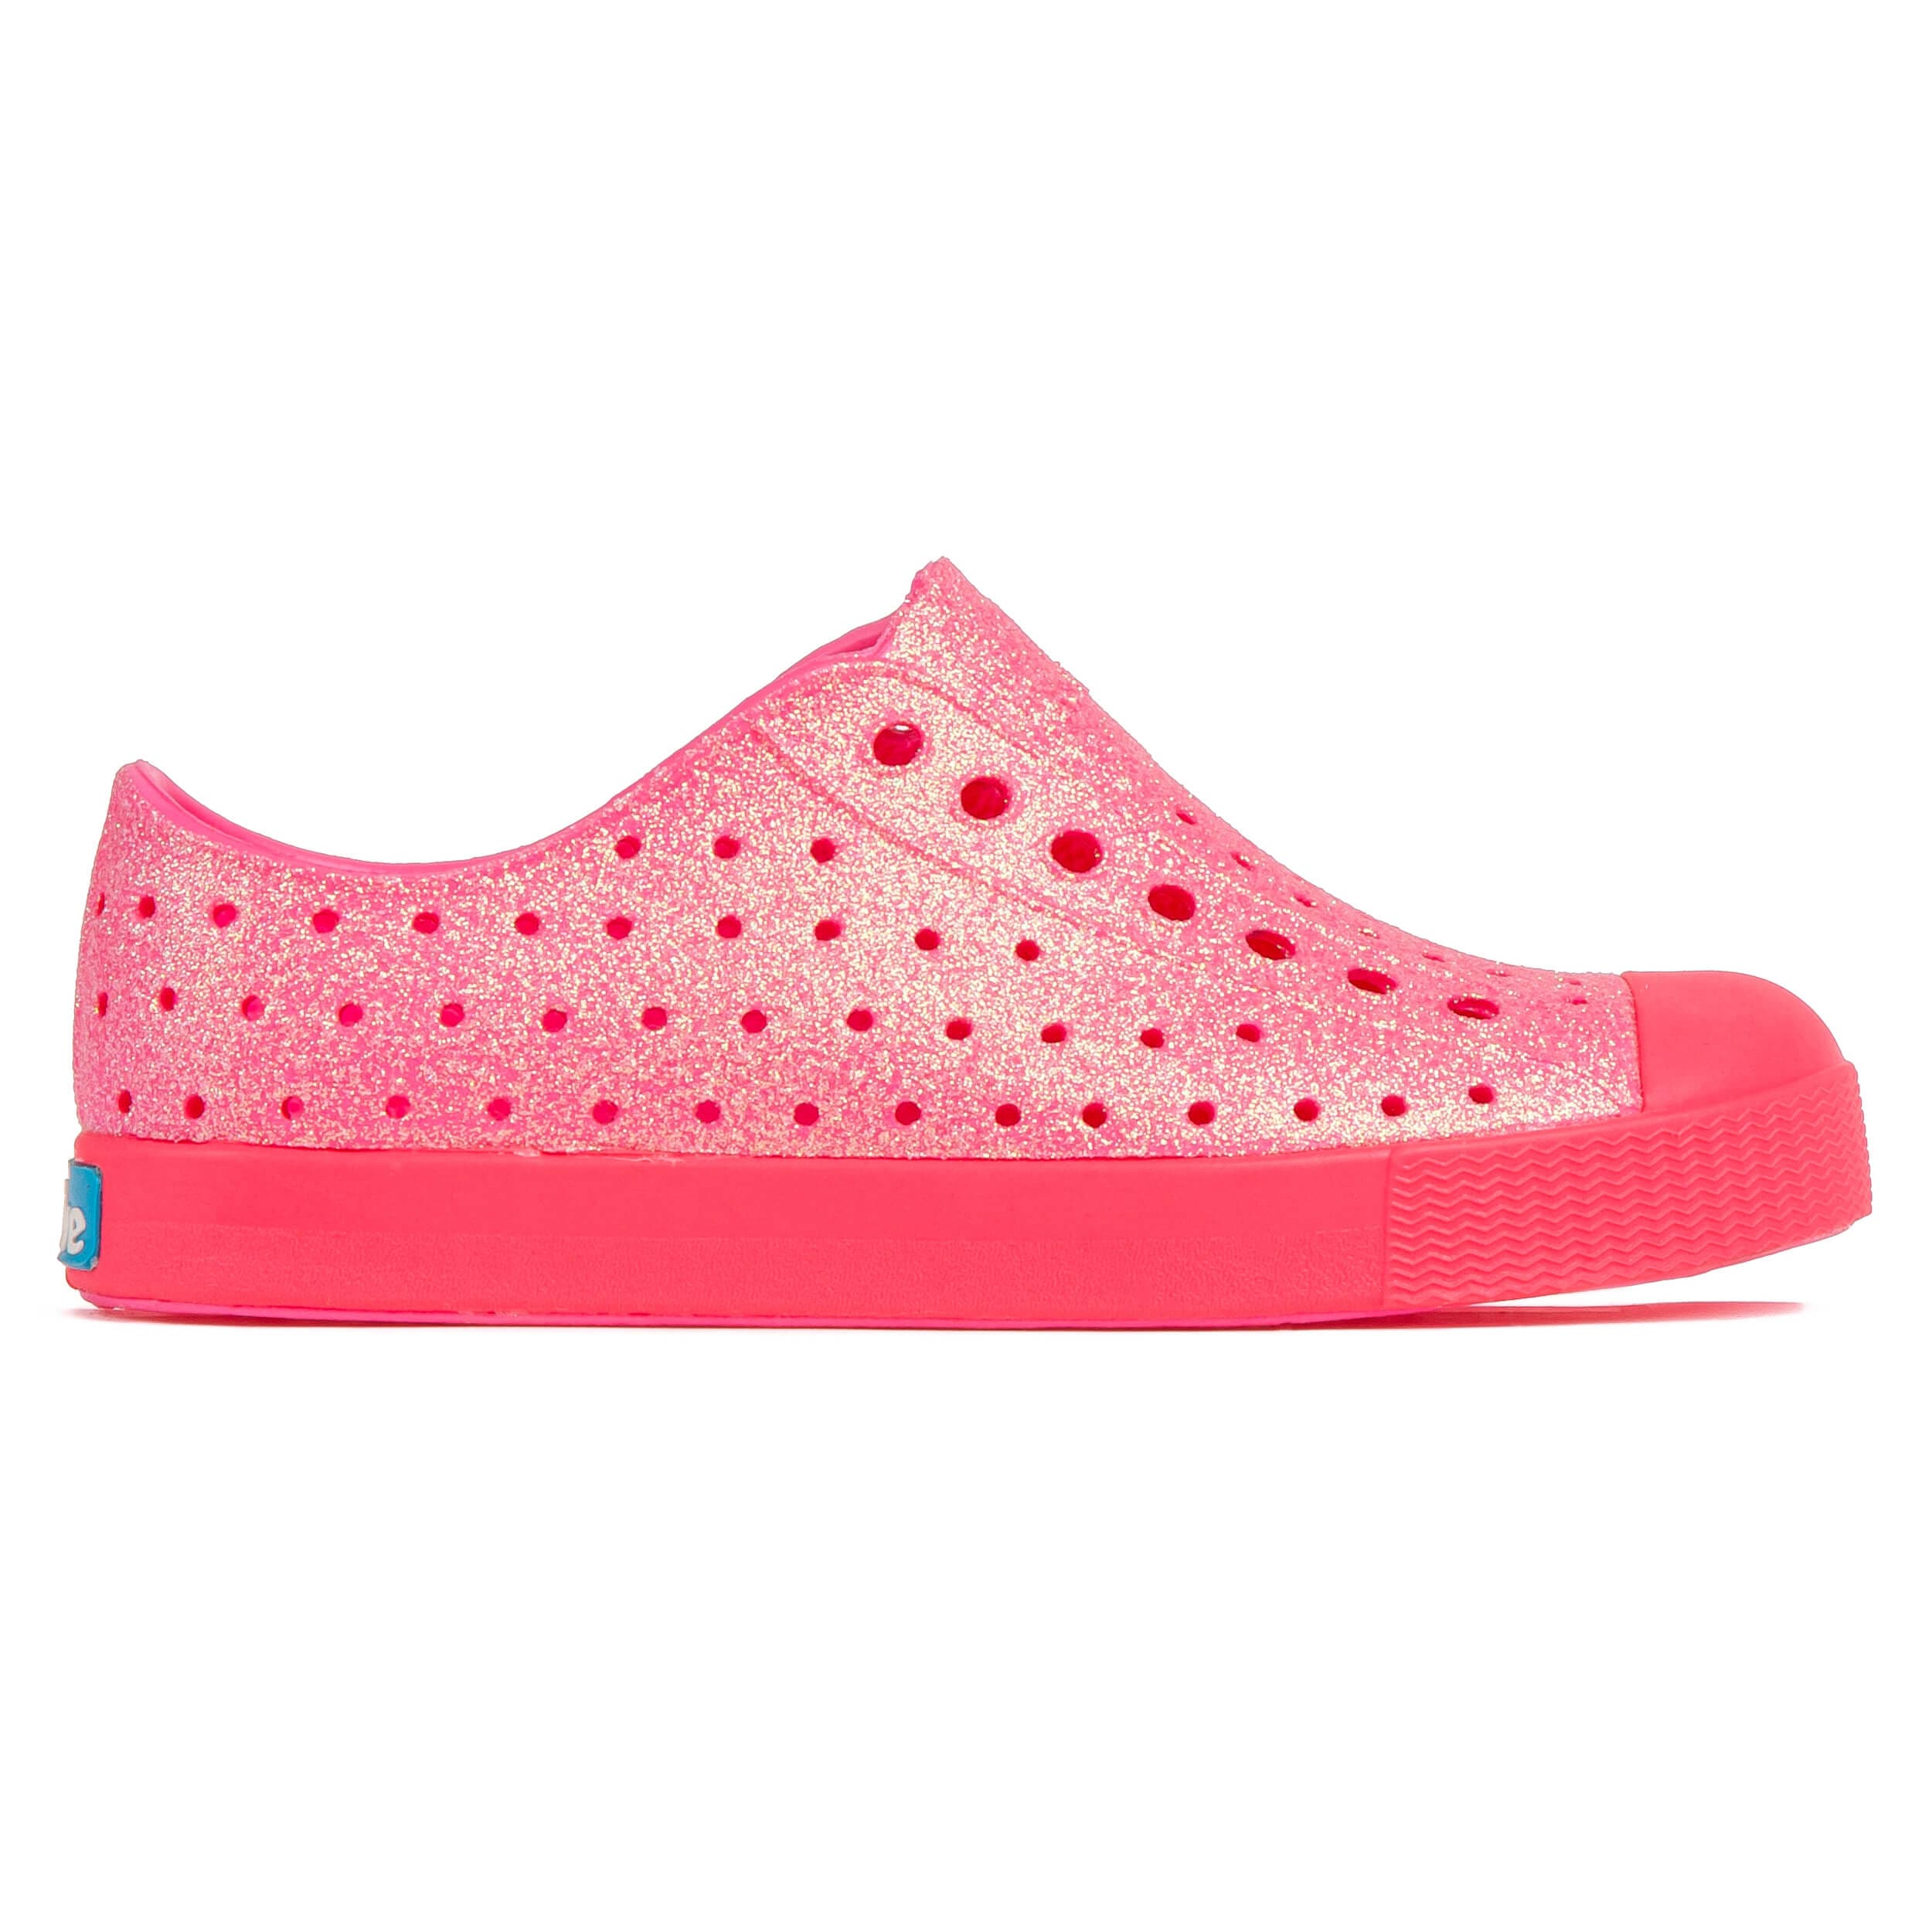 Toddler Bling Jefferson Water shoe - Pink